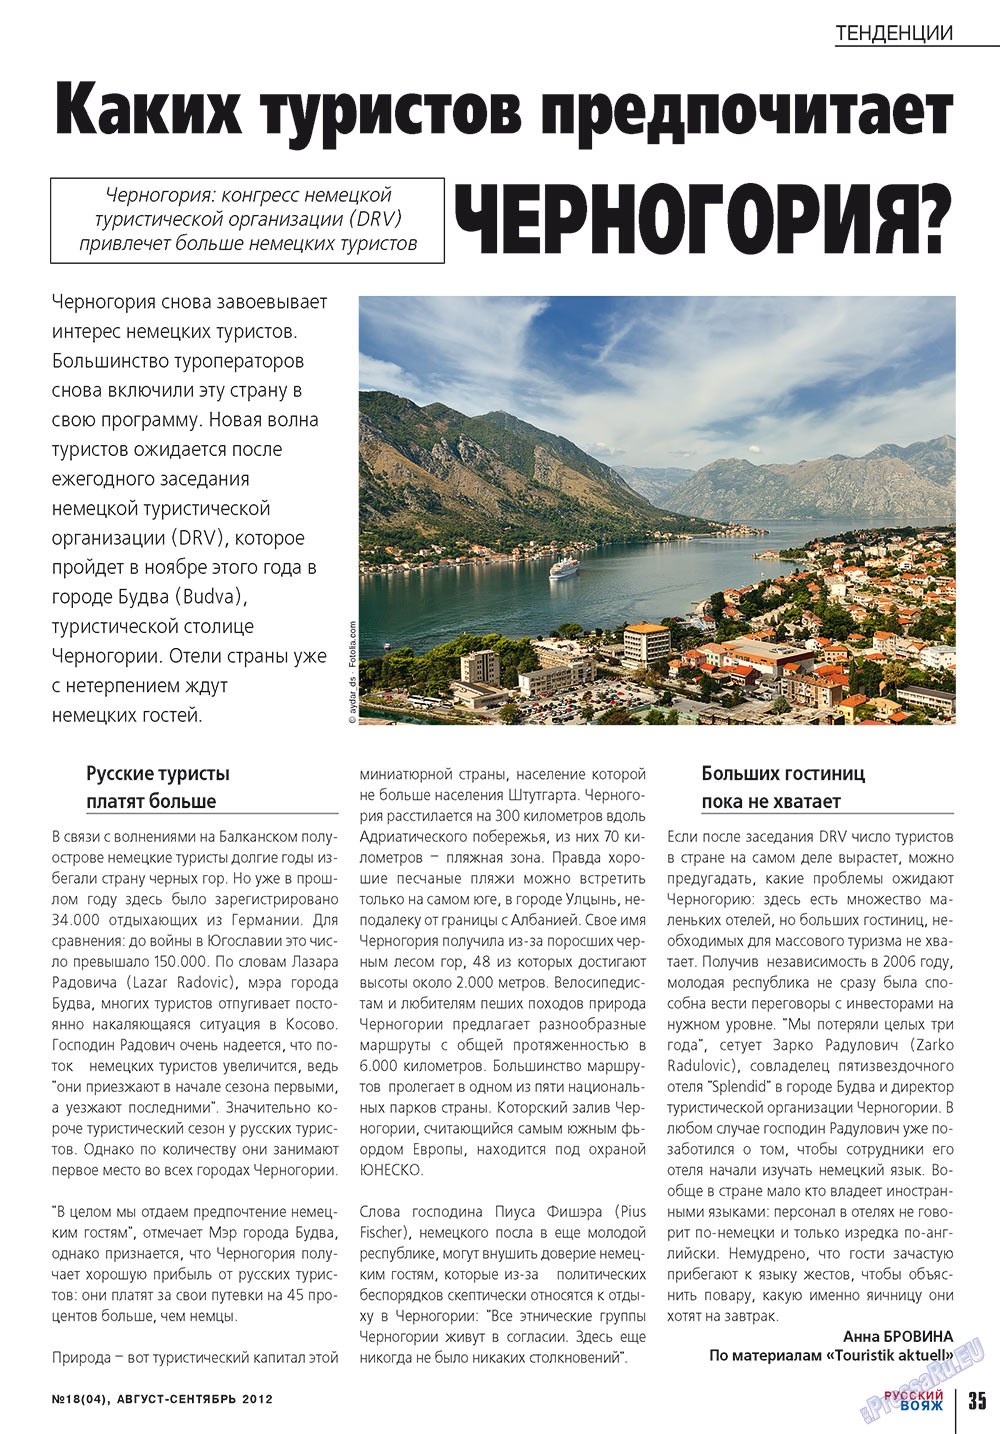 Русский вояж (журнал). 2012 год, номер 18, стр. 35